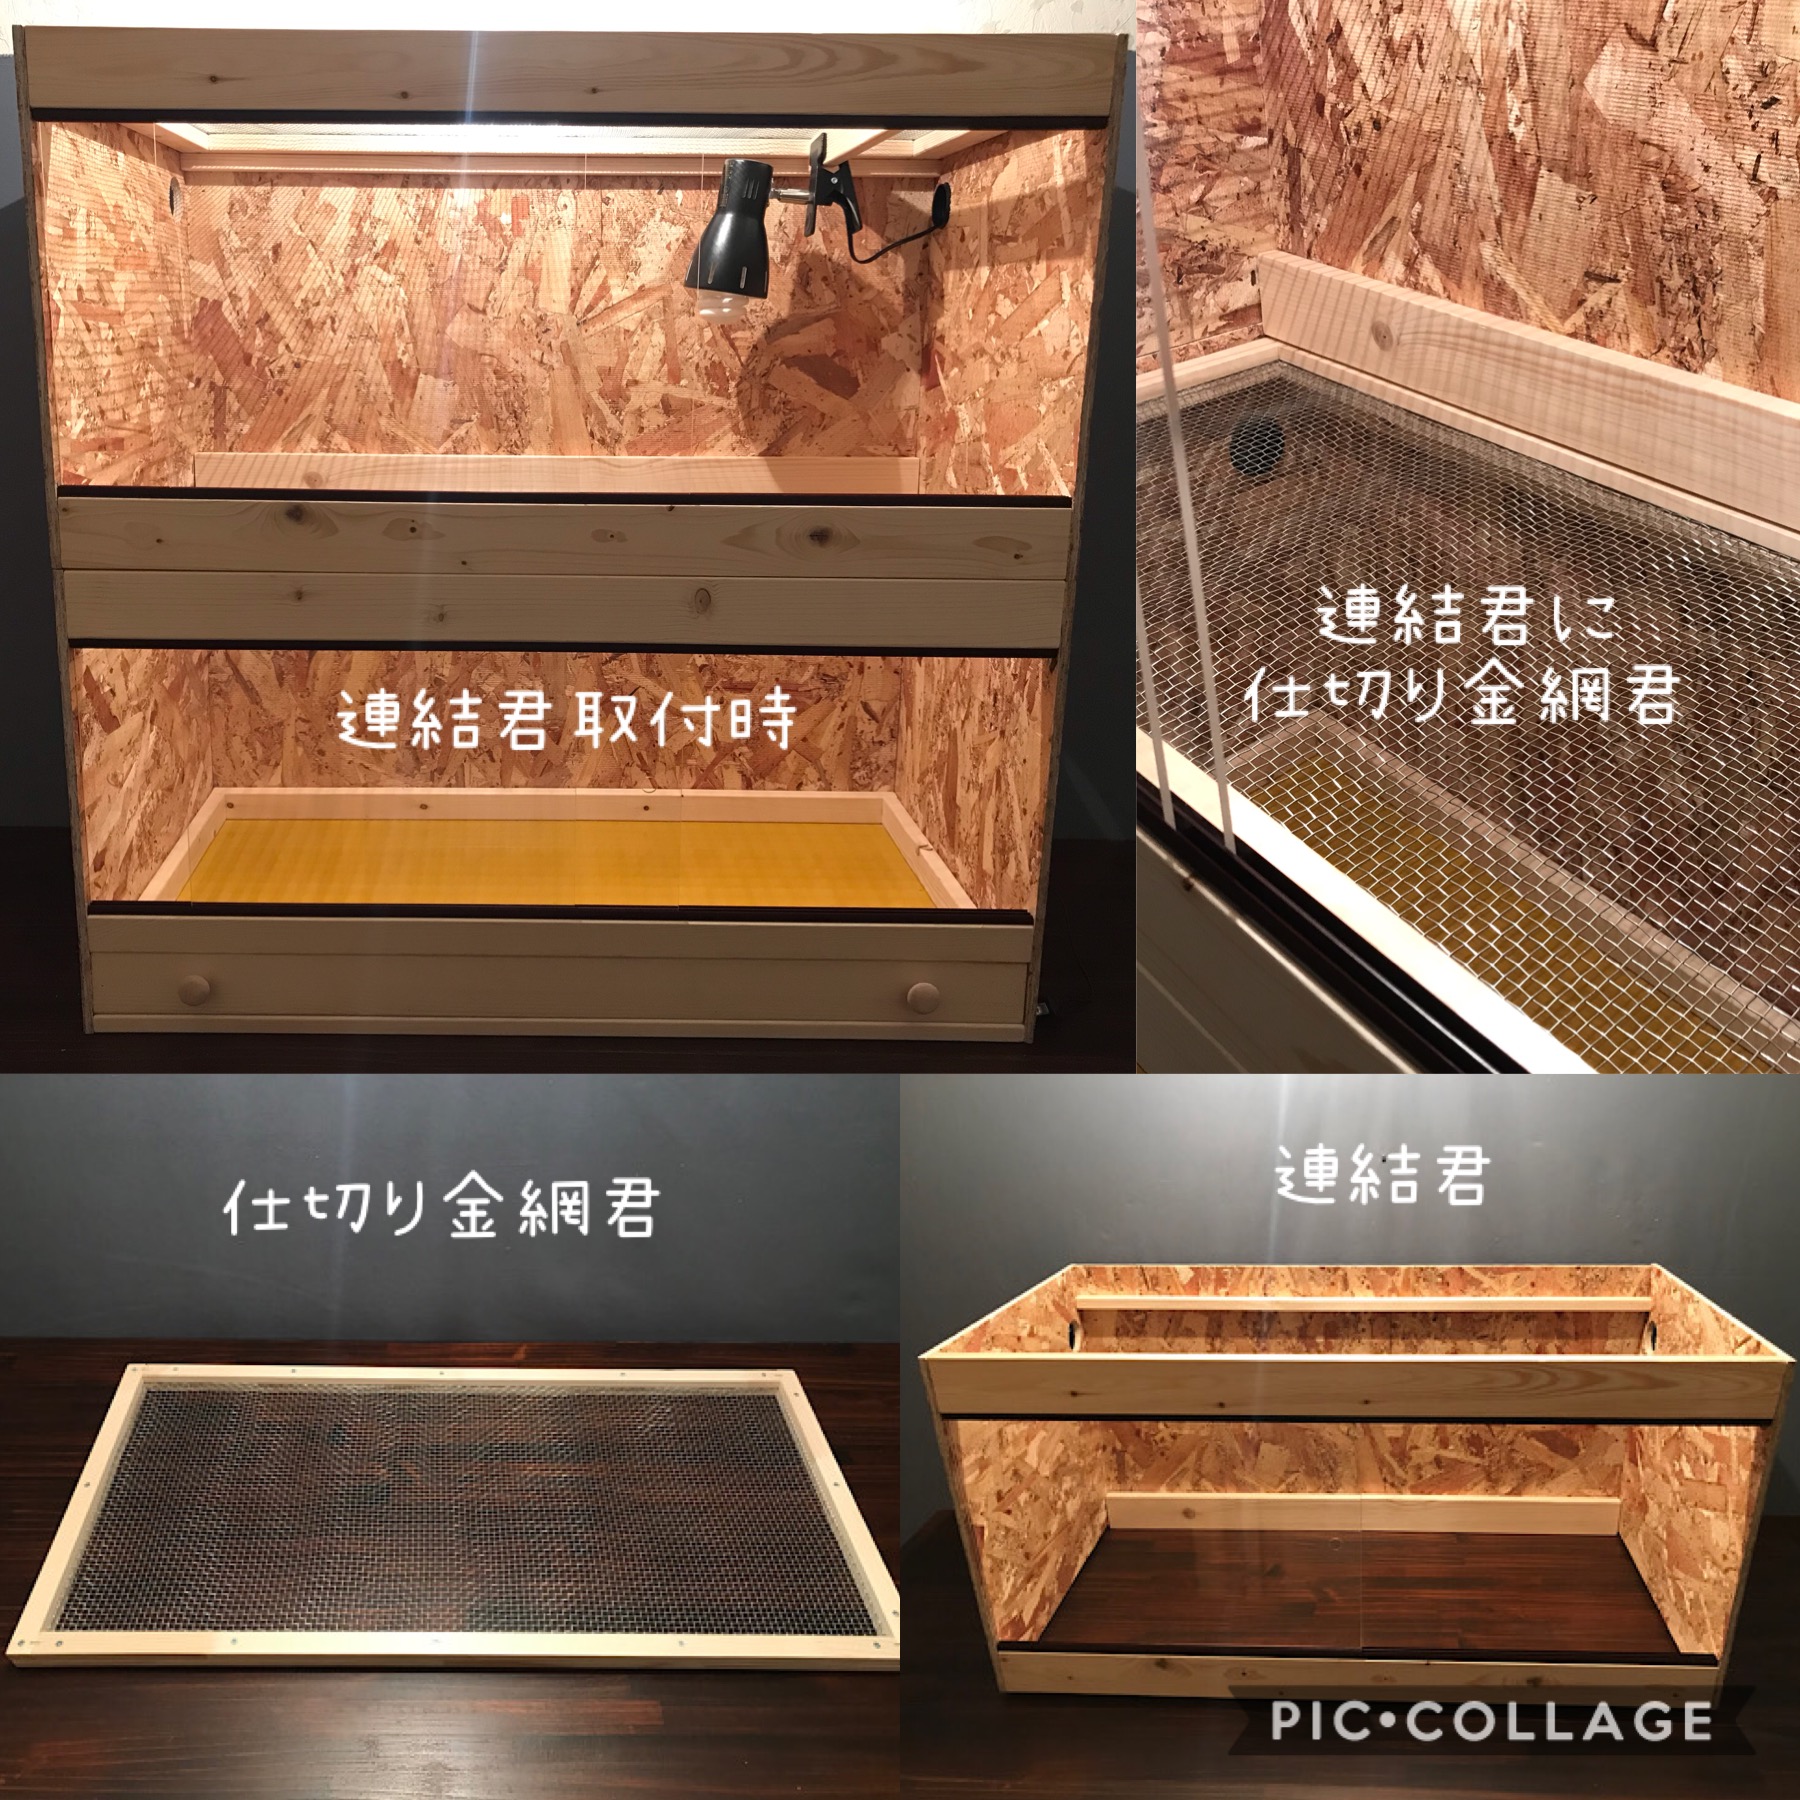 大阪直売 爬虫類ケージ 809050 化粧板 配線穴+ 床40 - 爬虫類・両生類用品